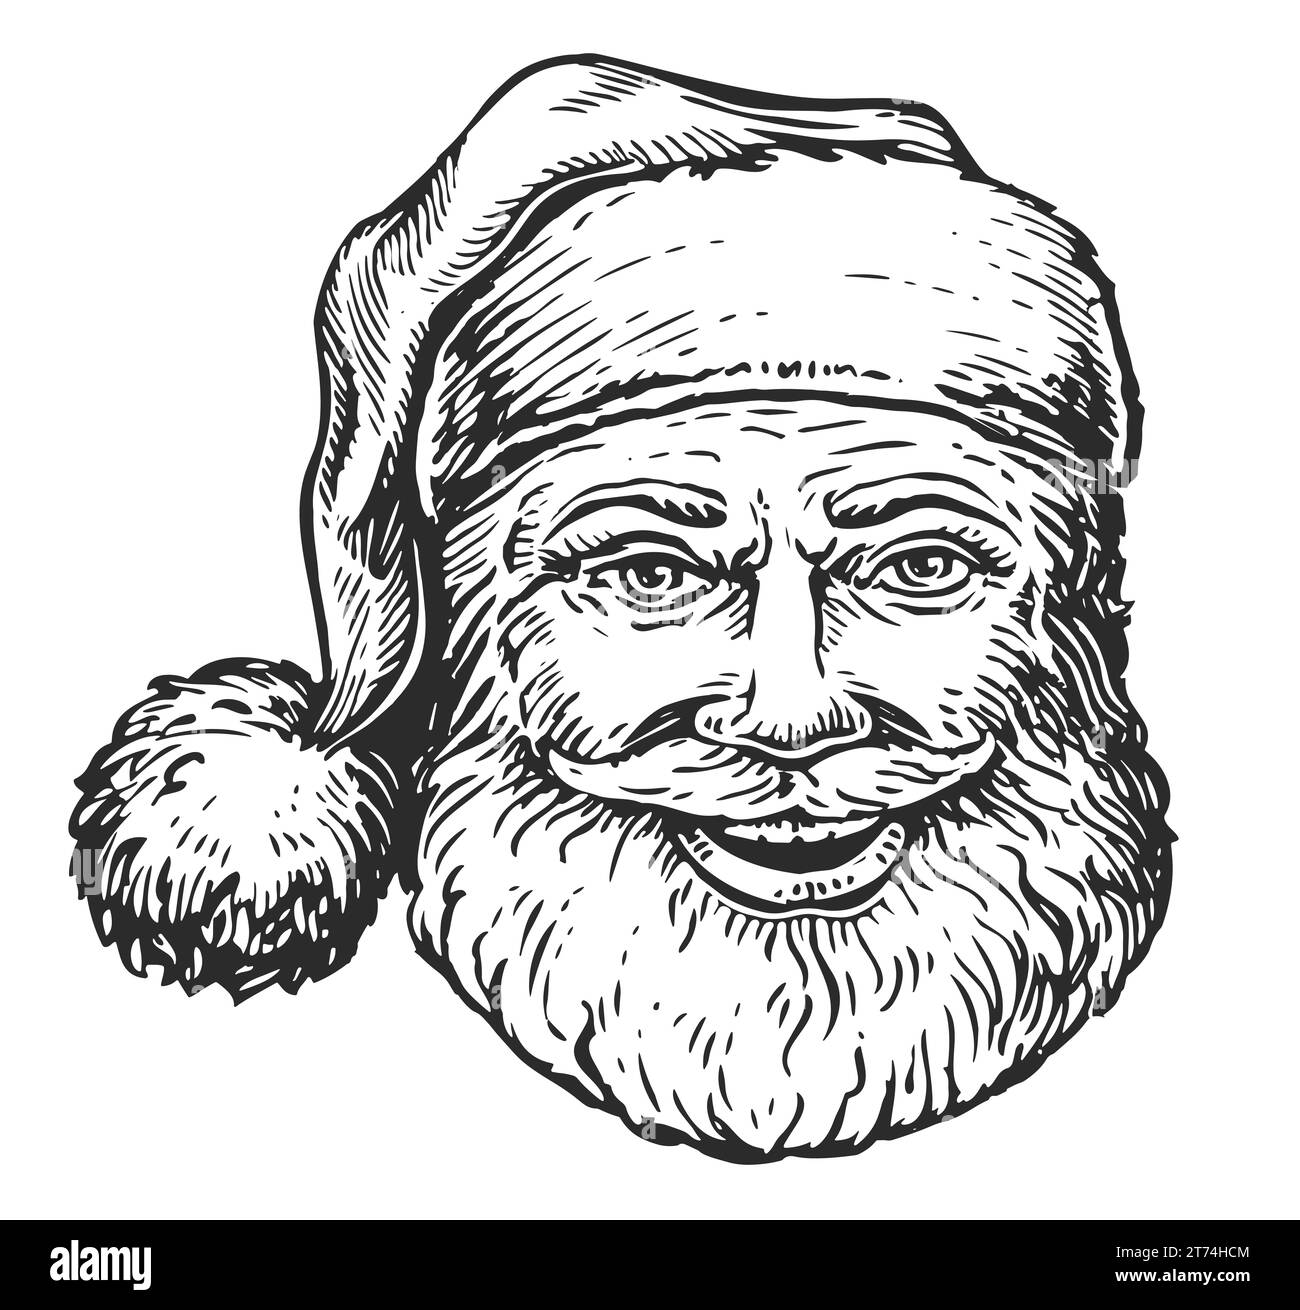 Babbo Natale sorridente e allegro. Ritratto a mano del simbolo di Natale, illustrazione Foto Stock